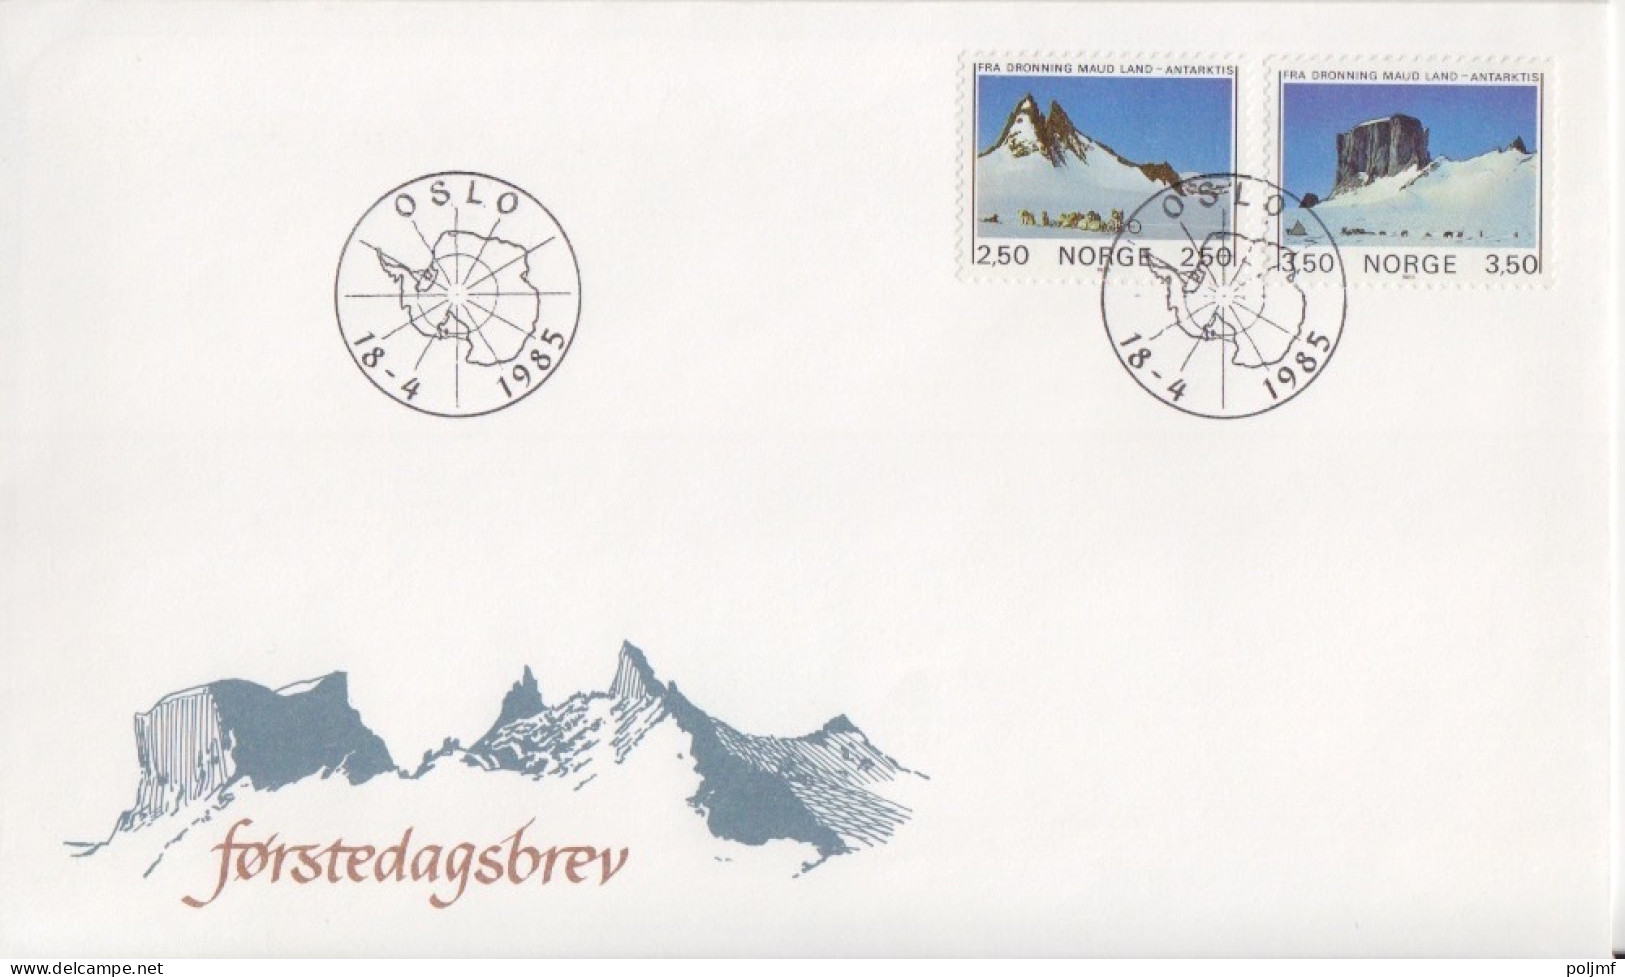 FDC Obl. Oslo Le 18 - 4 1985 Sur N° 874, 875 (paysages De Dronning Maud Land) - Briefe U. Dokumente